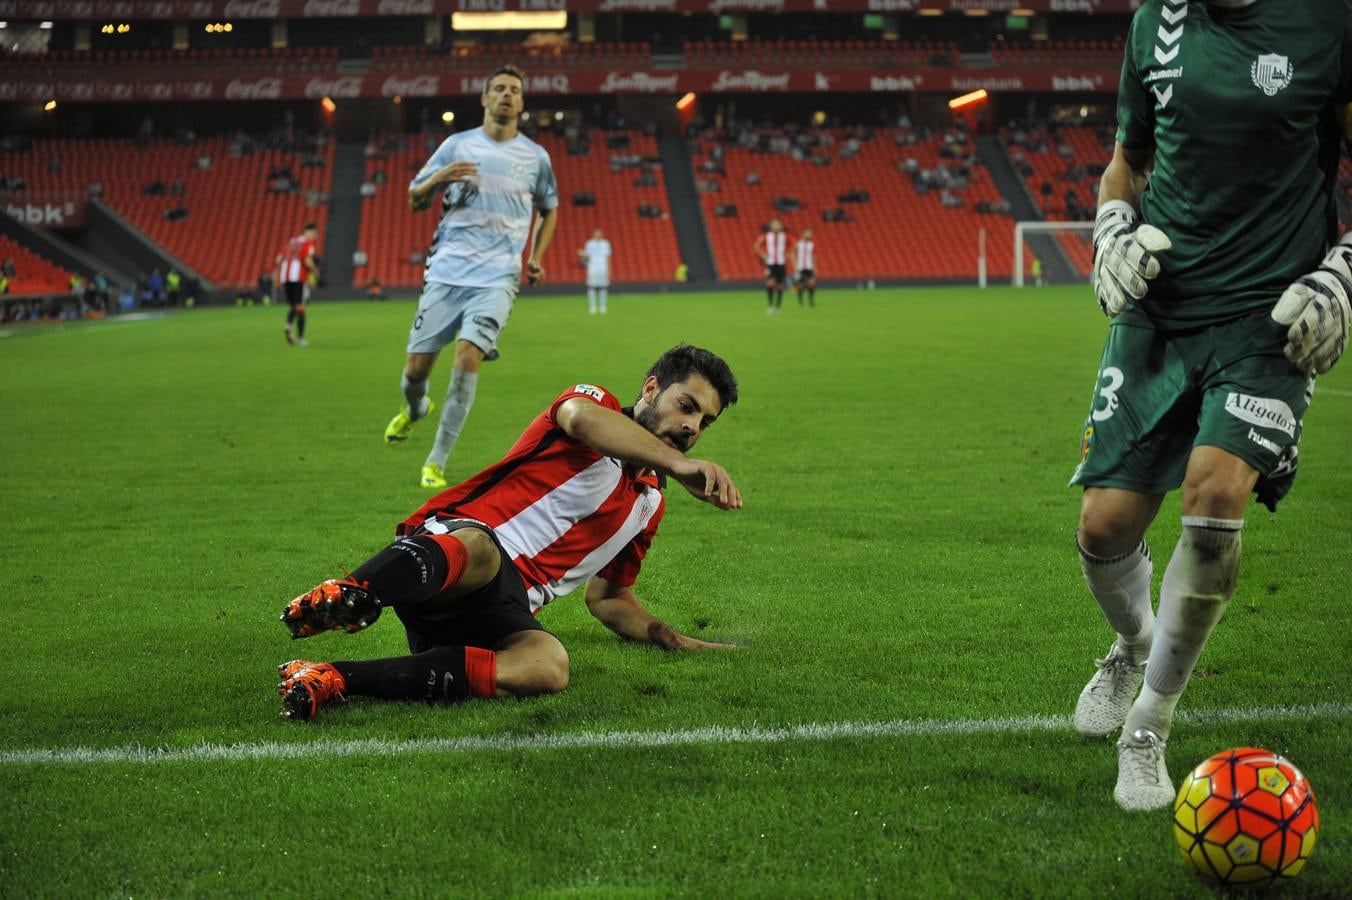 Las mejores imágenes del partido Bilbao Athletic-Llagostera